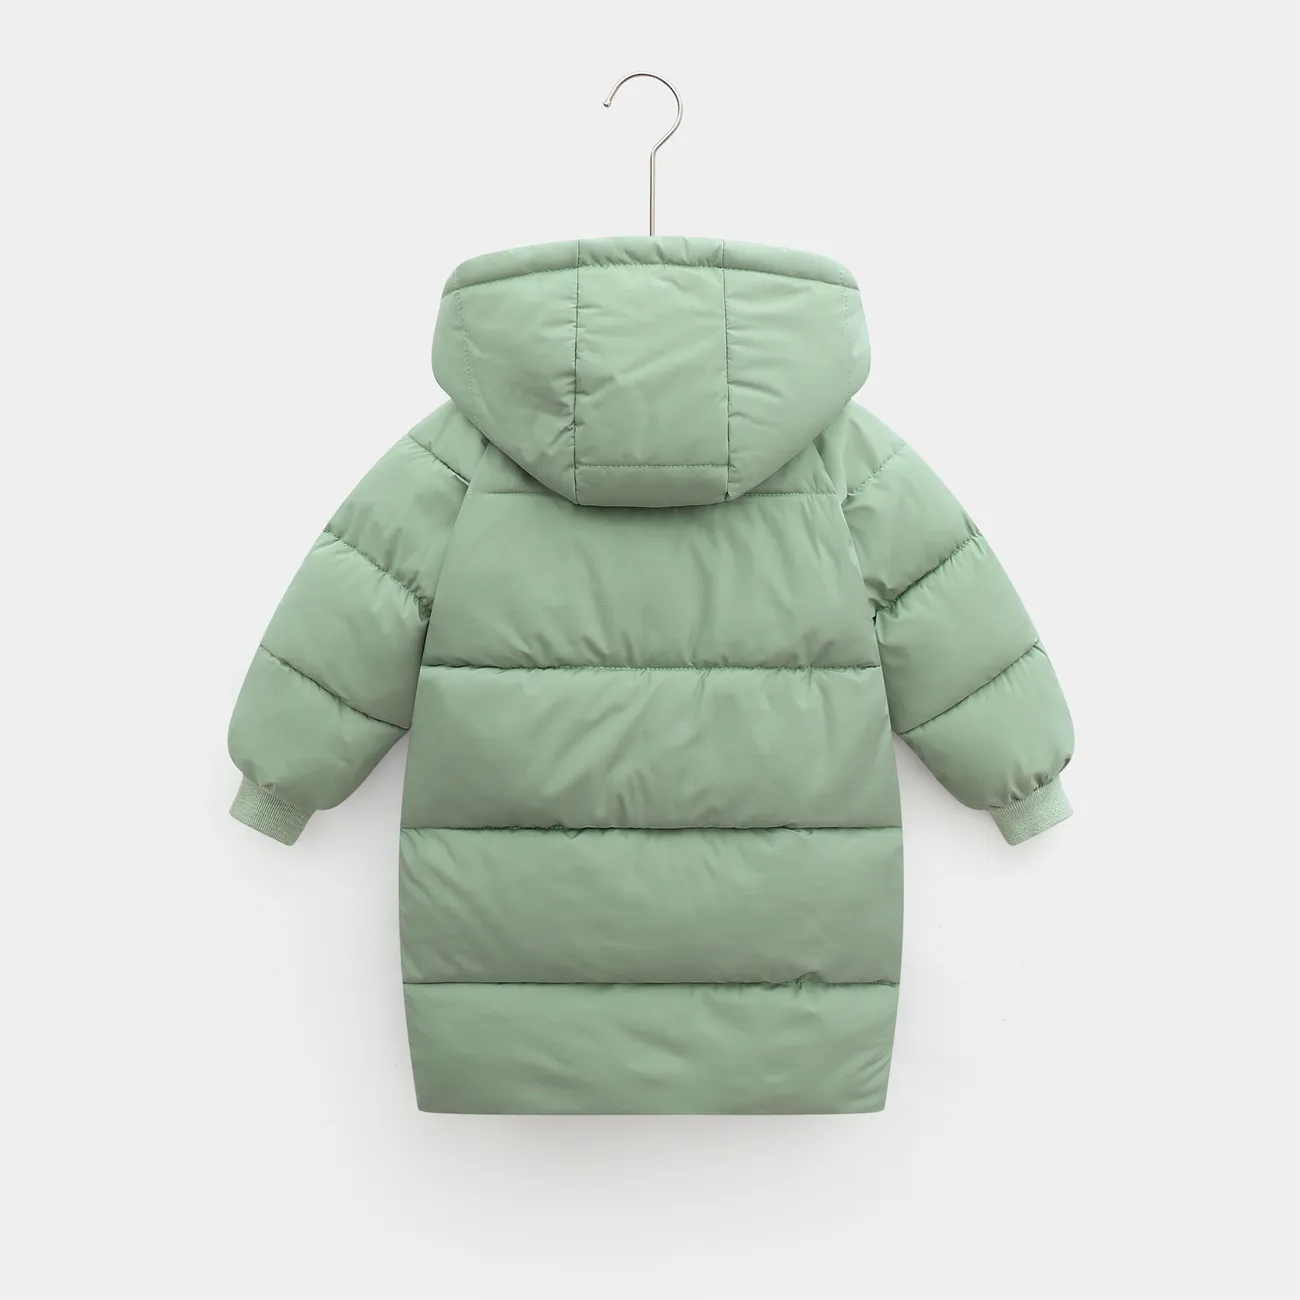 Einfarbiger, wattierter Mantel mit Kapuze und Knöpfen für Kleinkinder, Jungen/Mädchen grün big image 1